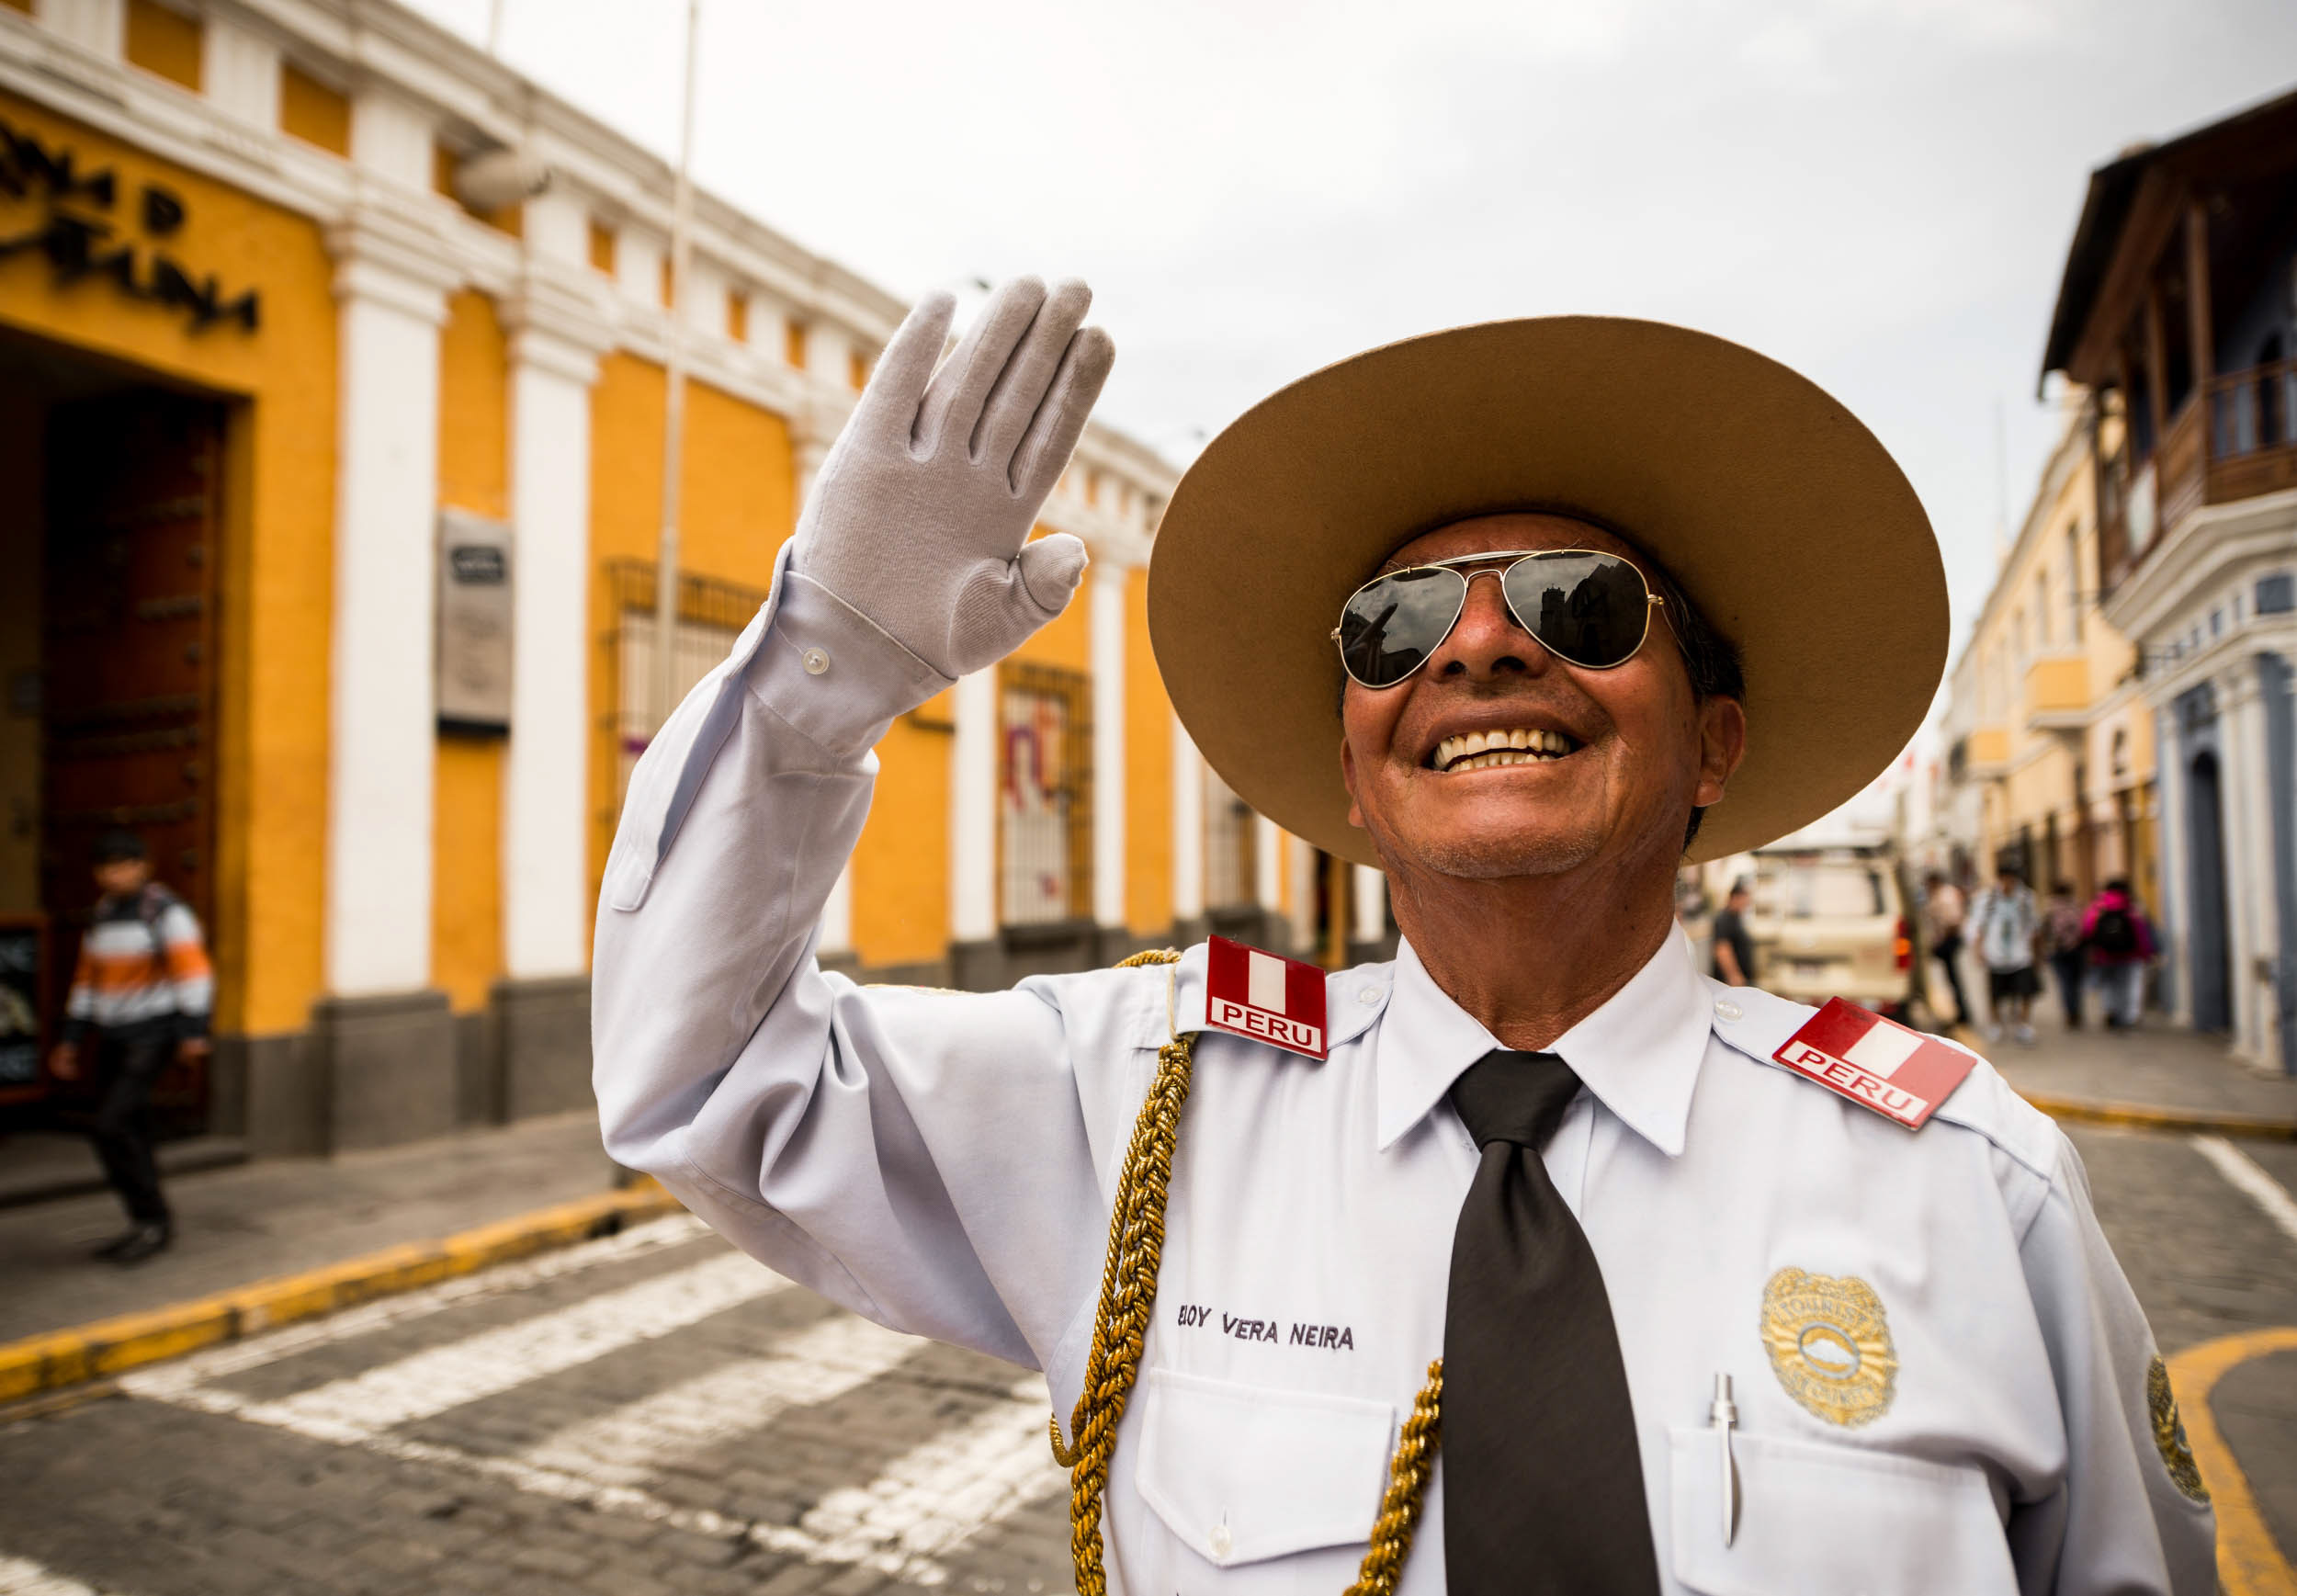 traffic-officer-man-smile-arequipa-peru-latin-america